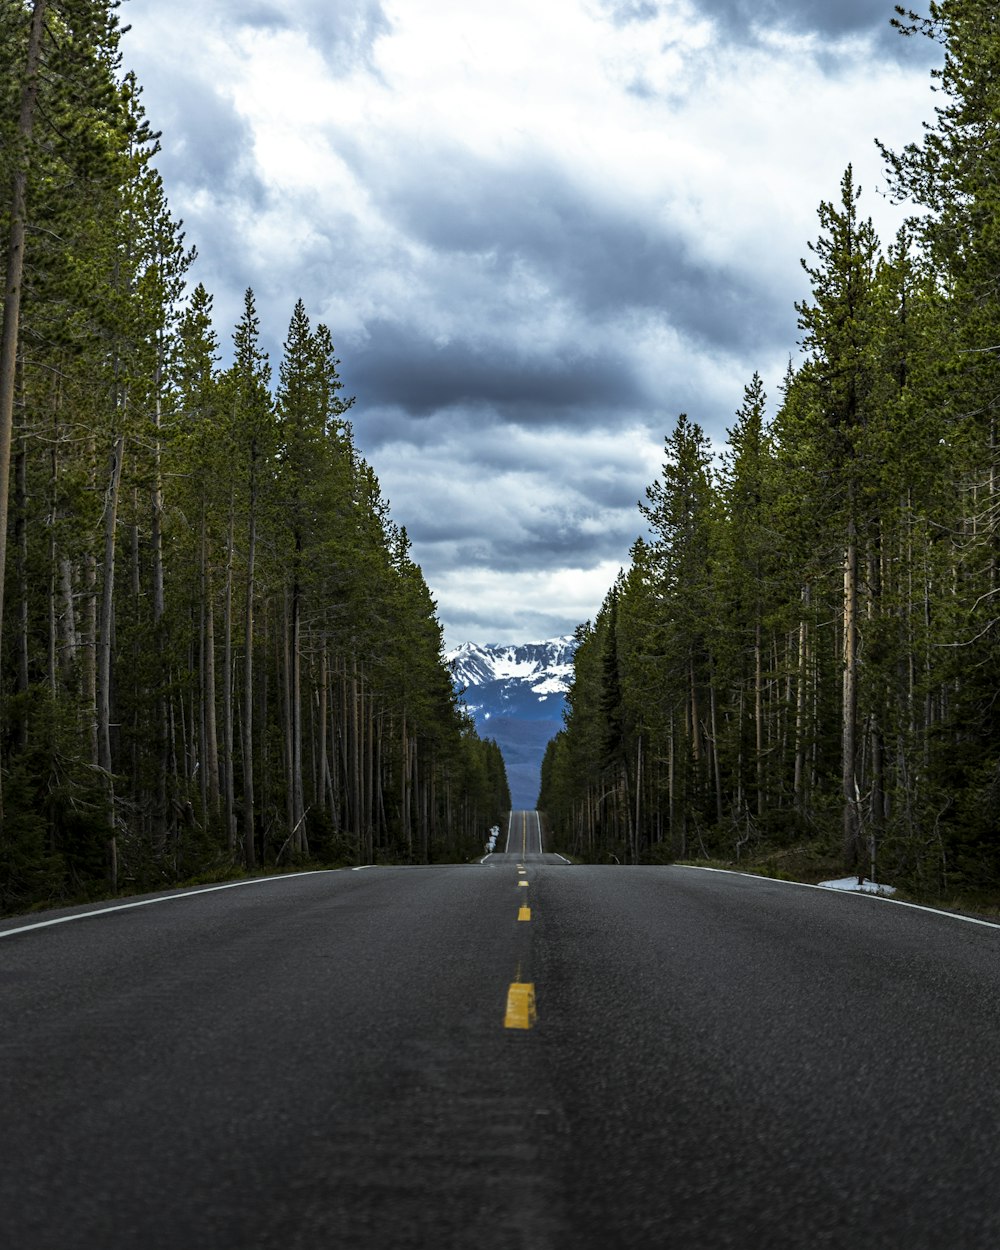 Carretera de asfalto gris entre árboles verdes bajo cielo nublado gris durante el día